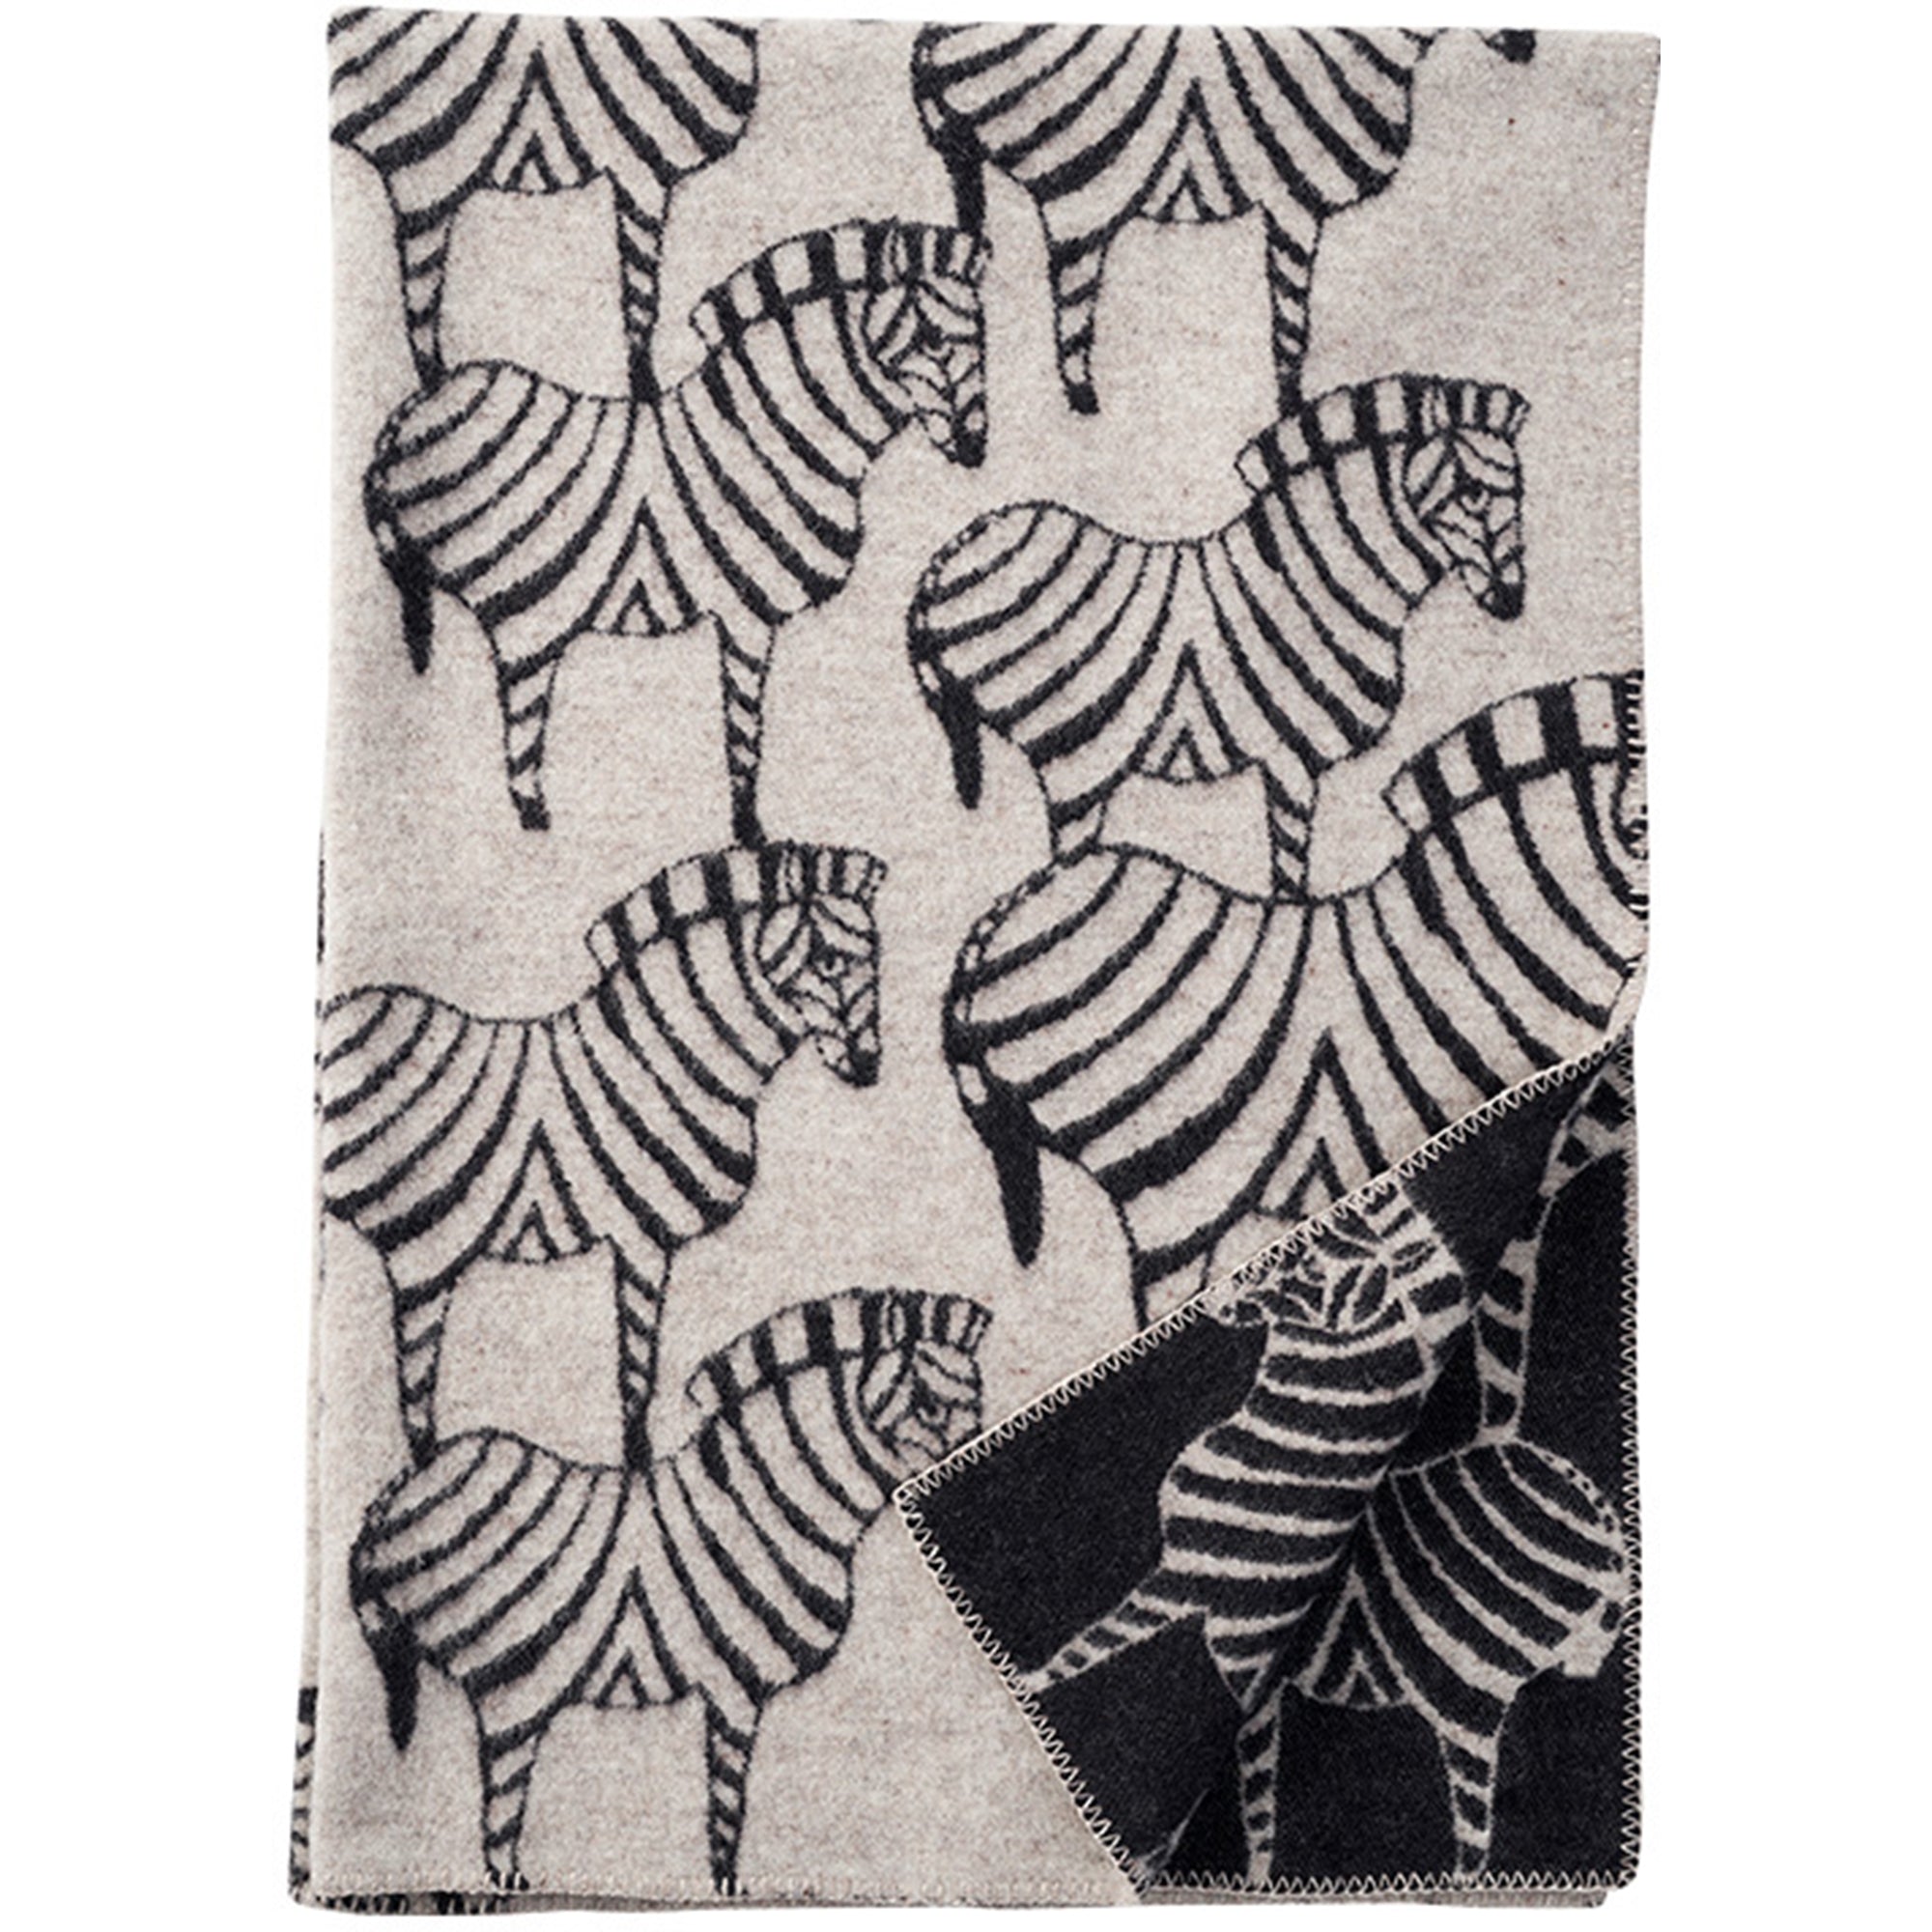 Zebra Natural Beige 130x180cm Woven Lambswool Blanket